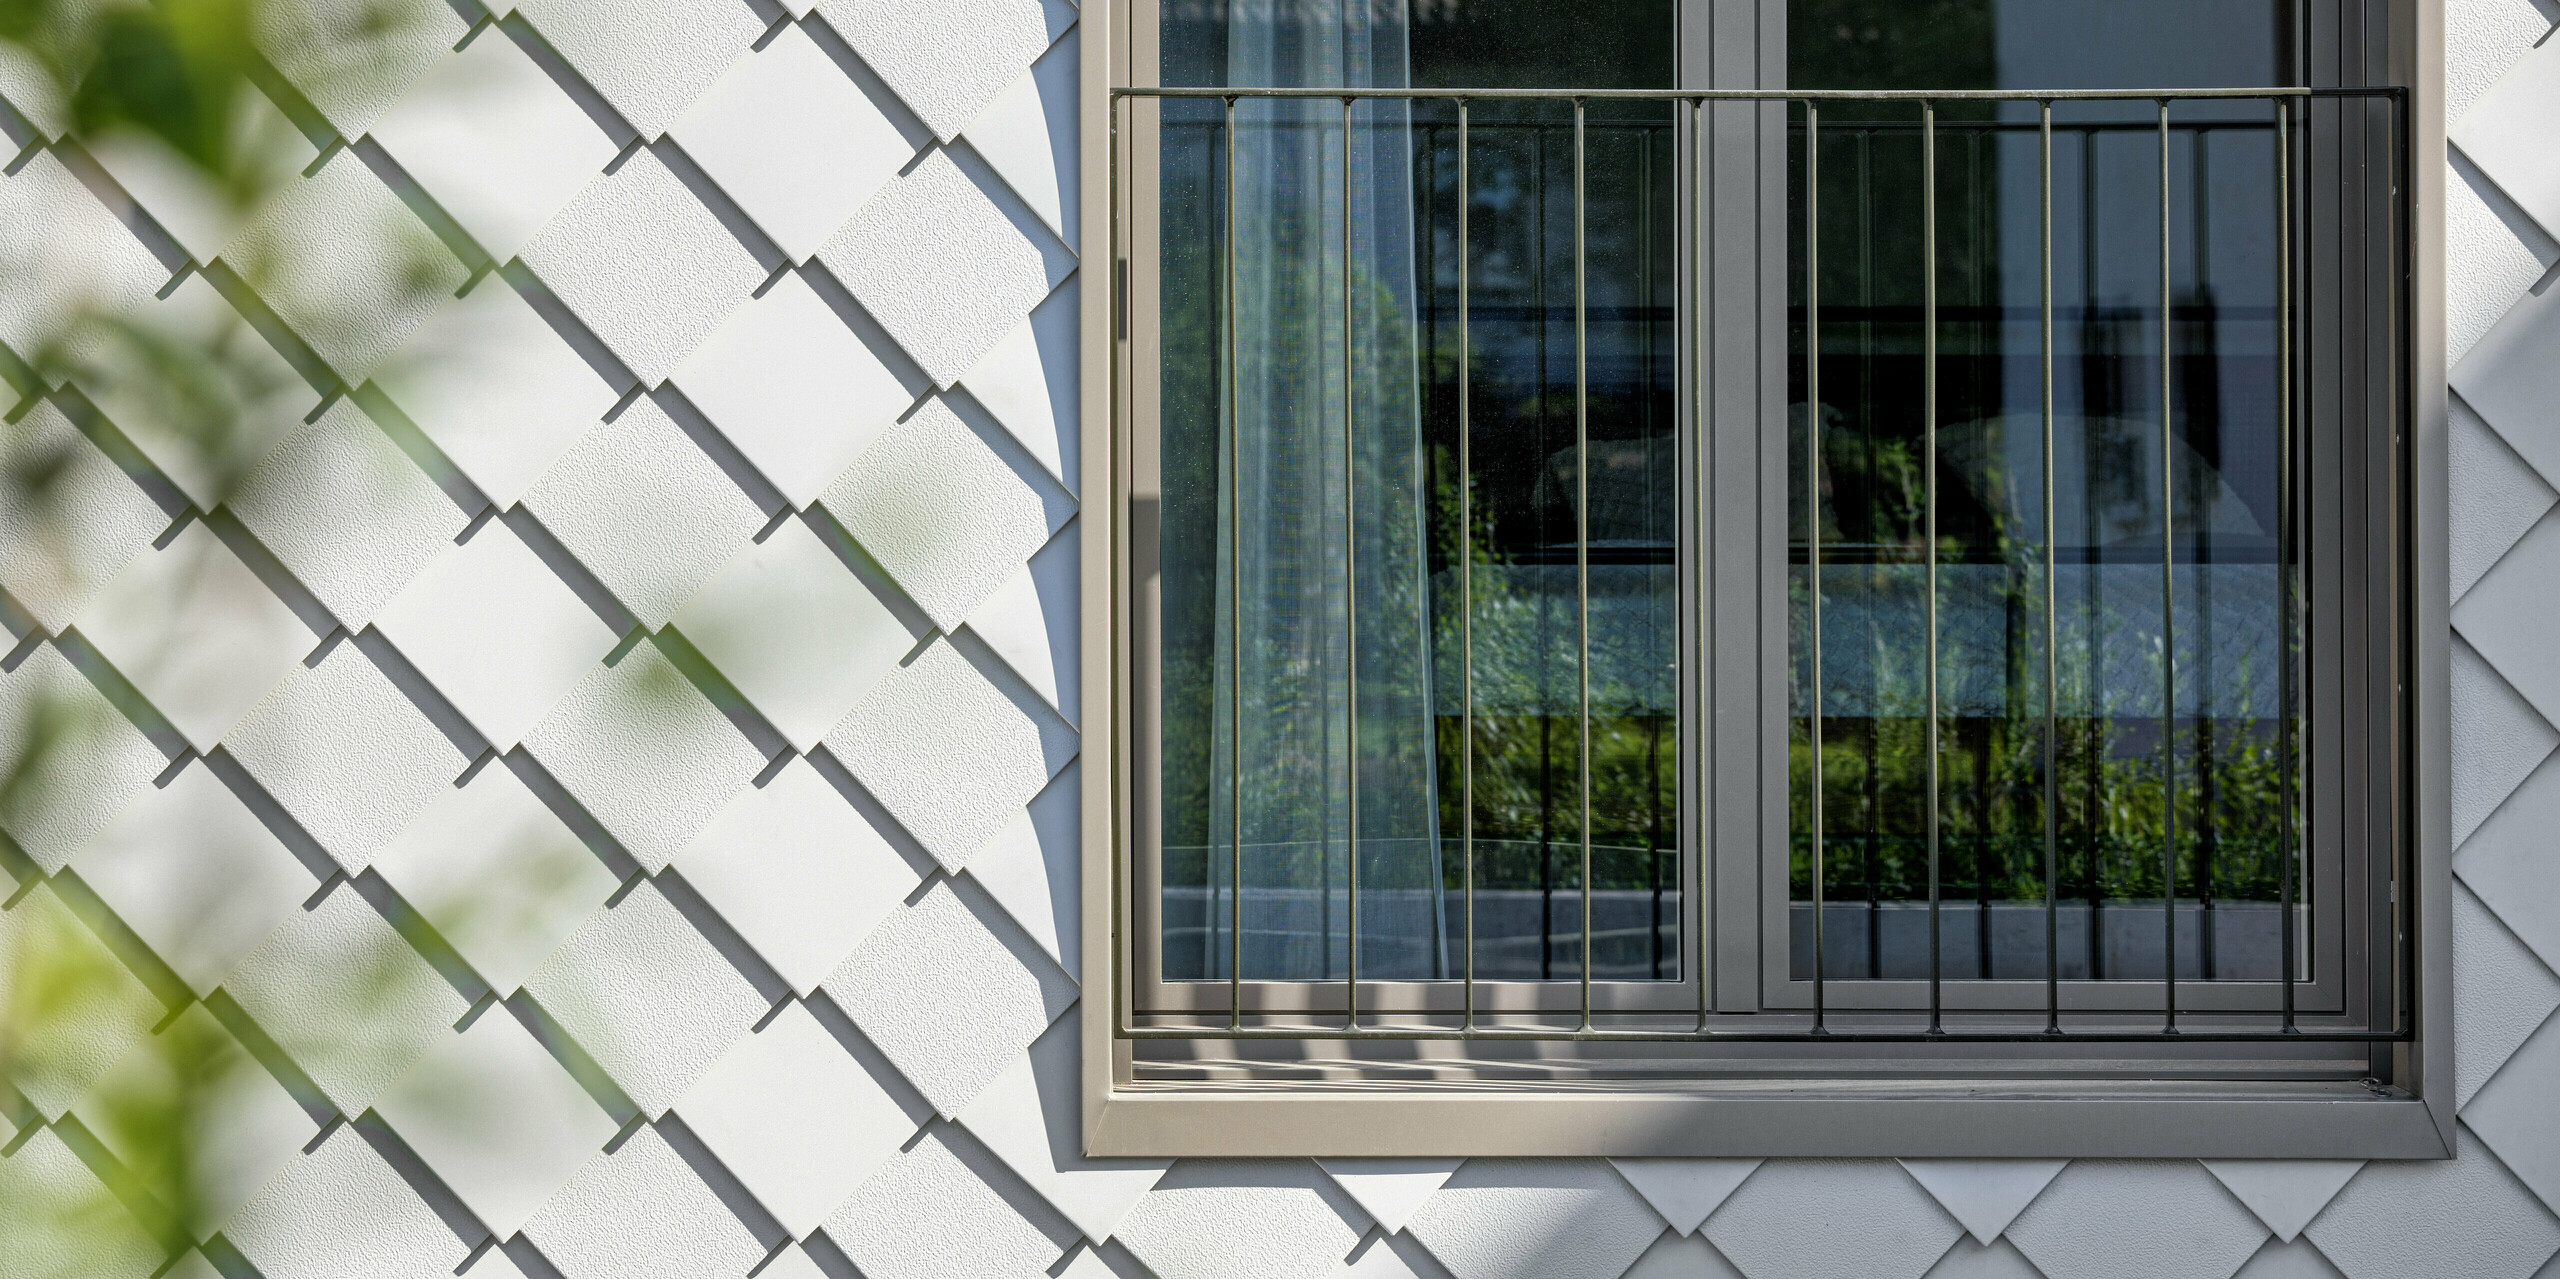 Architektonisch anspruchsvolle Fassade eines modernen Wohnhauses mit PREFA Wandrauten 20x20 in der Farbe P.10 Prefaweíß. Die langlebigen und wartungsarmen Rauten aus Aluminium umrahmen ein Fenster mit einem französischen Balkon. Die Verkleidung bietet ein leichtes, aber robustes Fassadensystem, das dem Objekt ein ästhetisch reizvolles, skaliertes Erscheinungsbild verleiht.